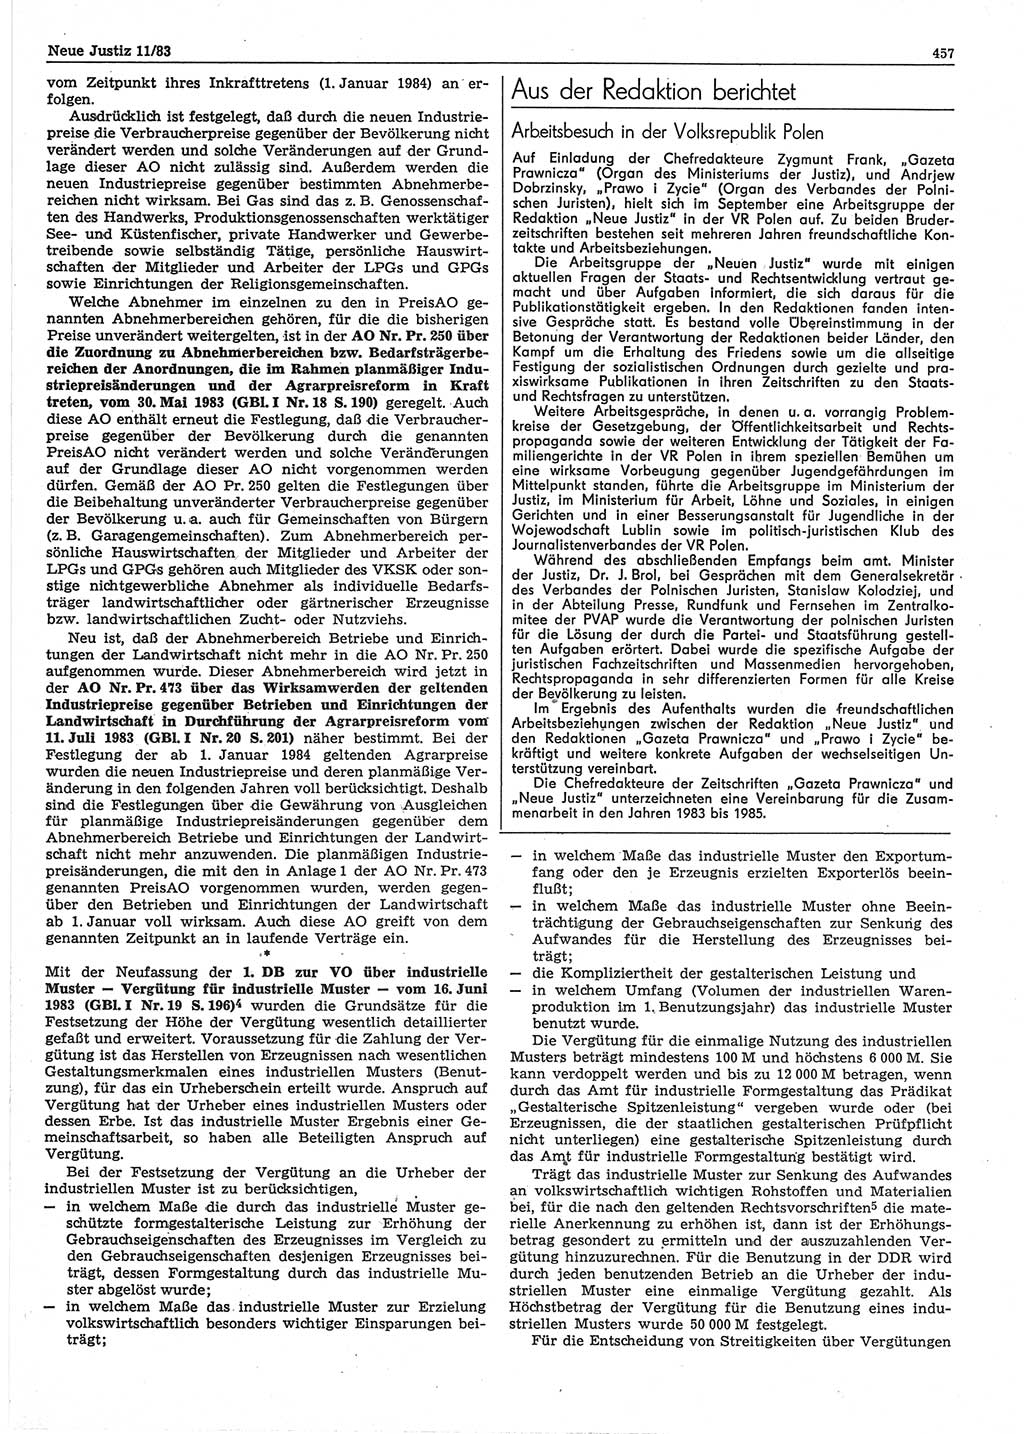 Neue Justiz (NJ), Zeitschrift für sozialistisches Recht und Gesetzlichkeit [Deutsche Demokratische Republik (DDR)], 37. Jahrgang 1983, Seite 457 (NJ DDR 1983, S. 457)